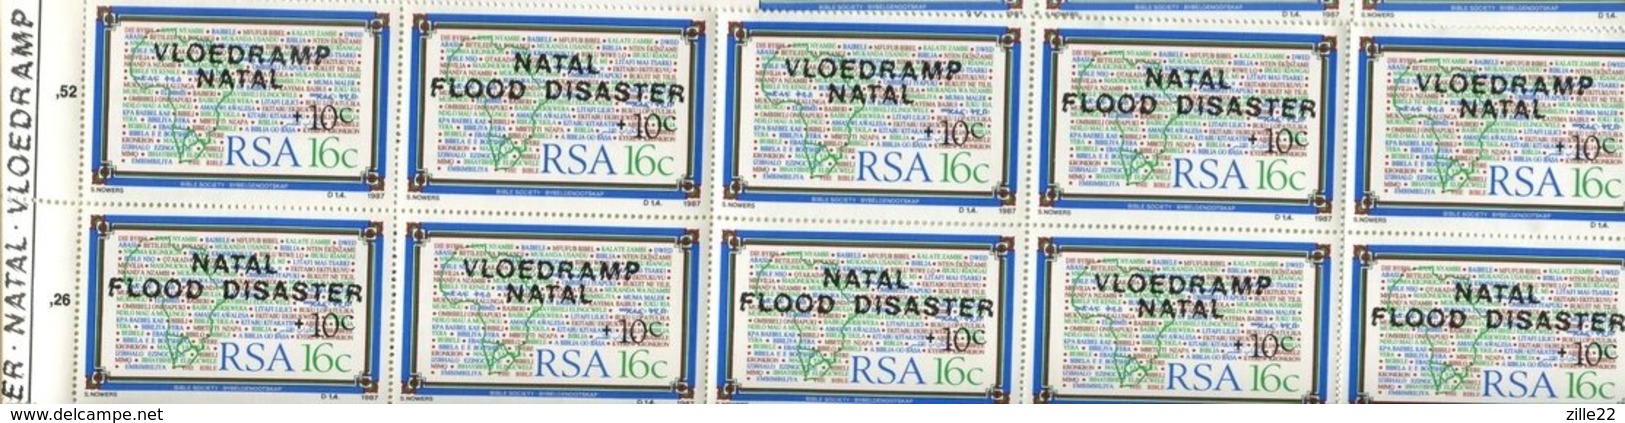 Südafrika 4 Markenheftchen Mi# 714-5,719-20,725-6,731-2 -  postfrisch MNH - Flood Disaster 1987